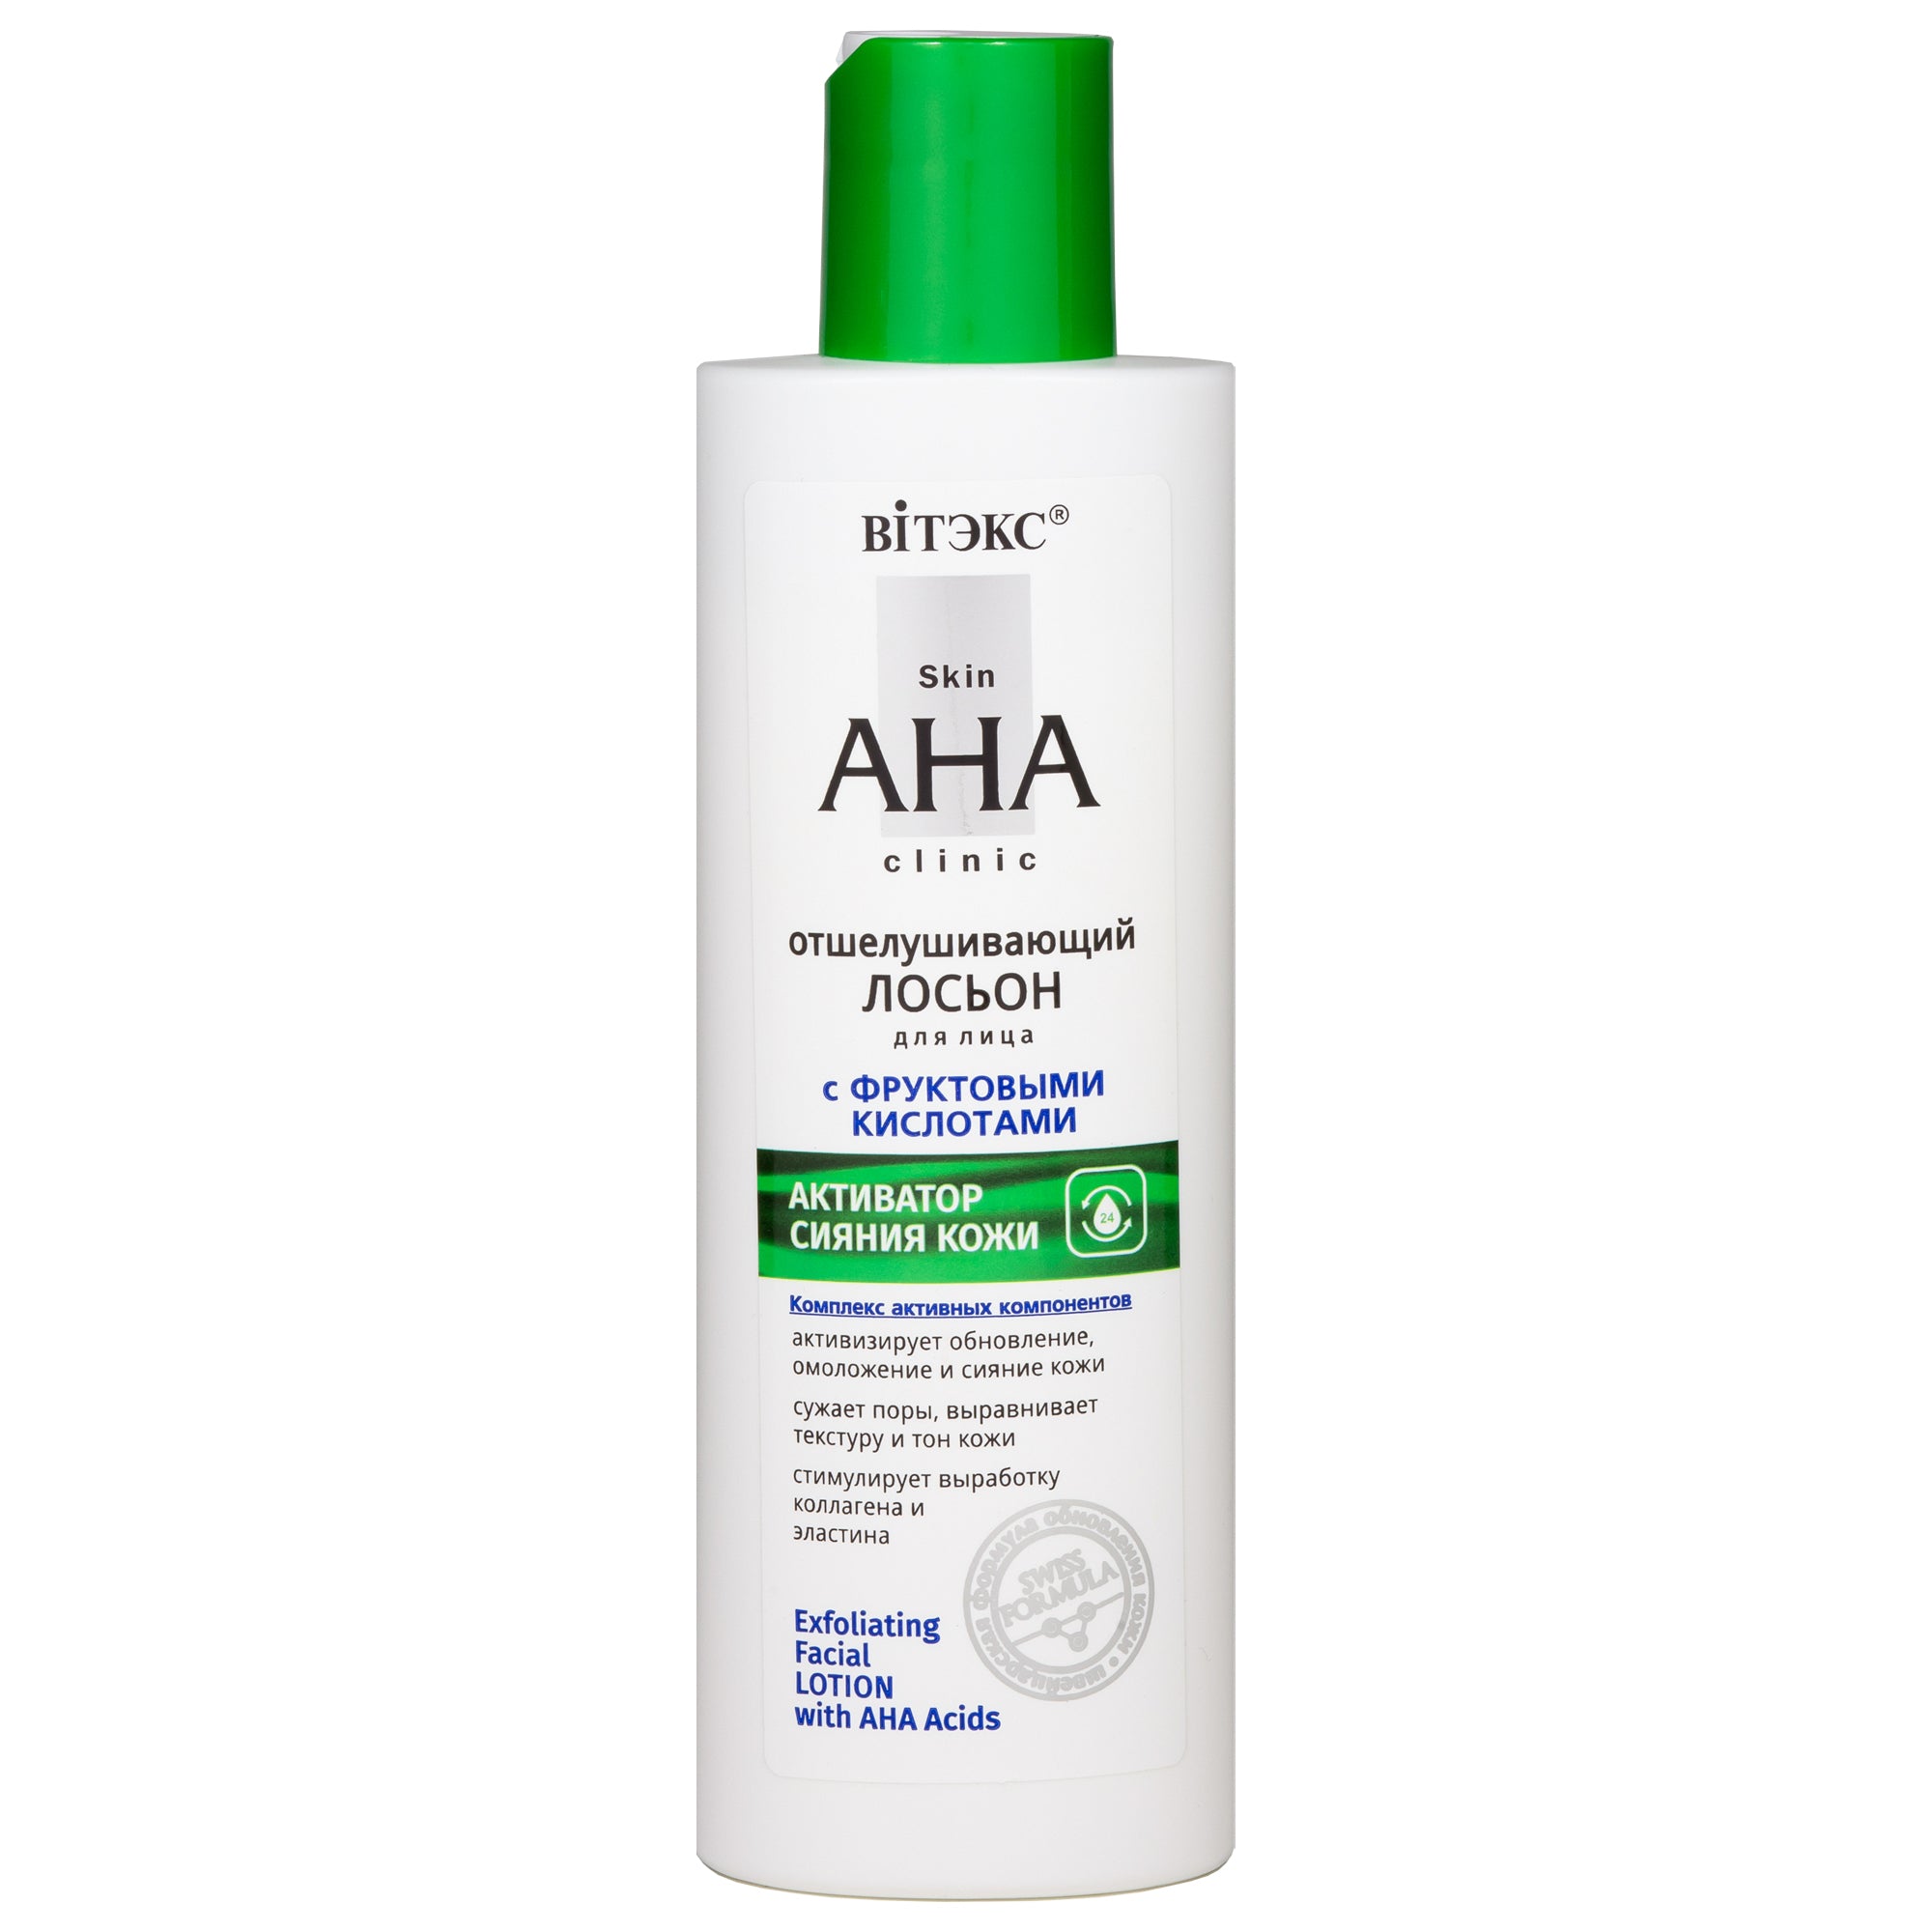 Skin AHA Clinic AHA Asitleri İçeren Eksfoliye Edici Yüz Losyonu | Auraline Cosmetics